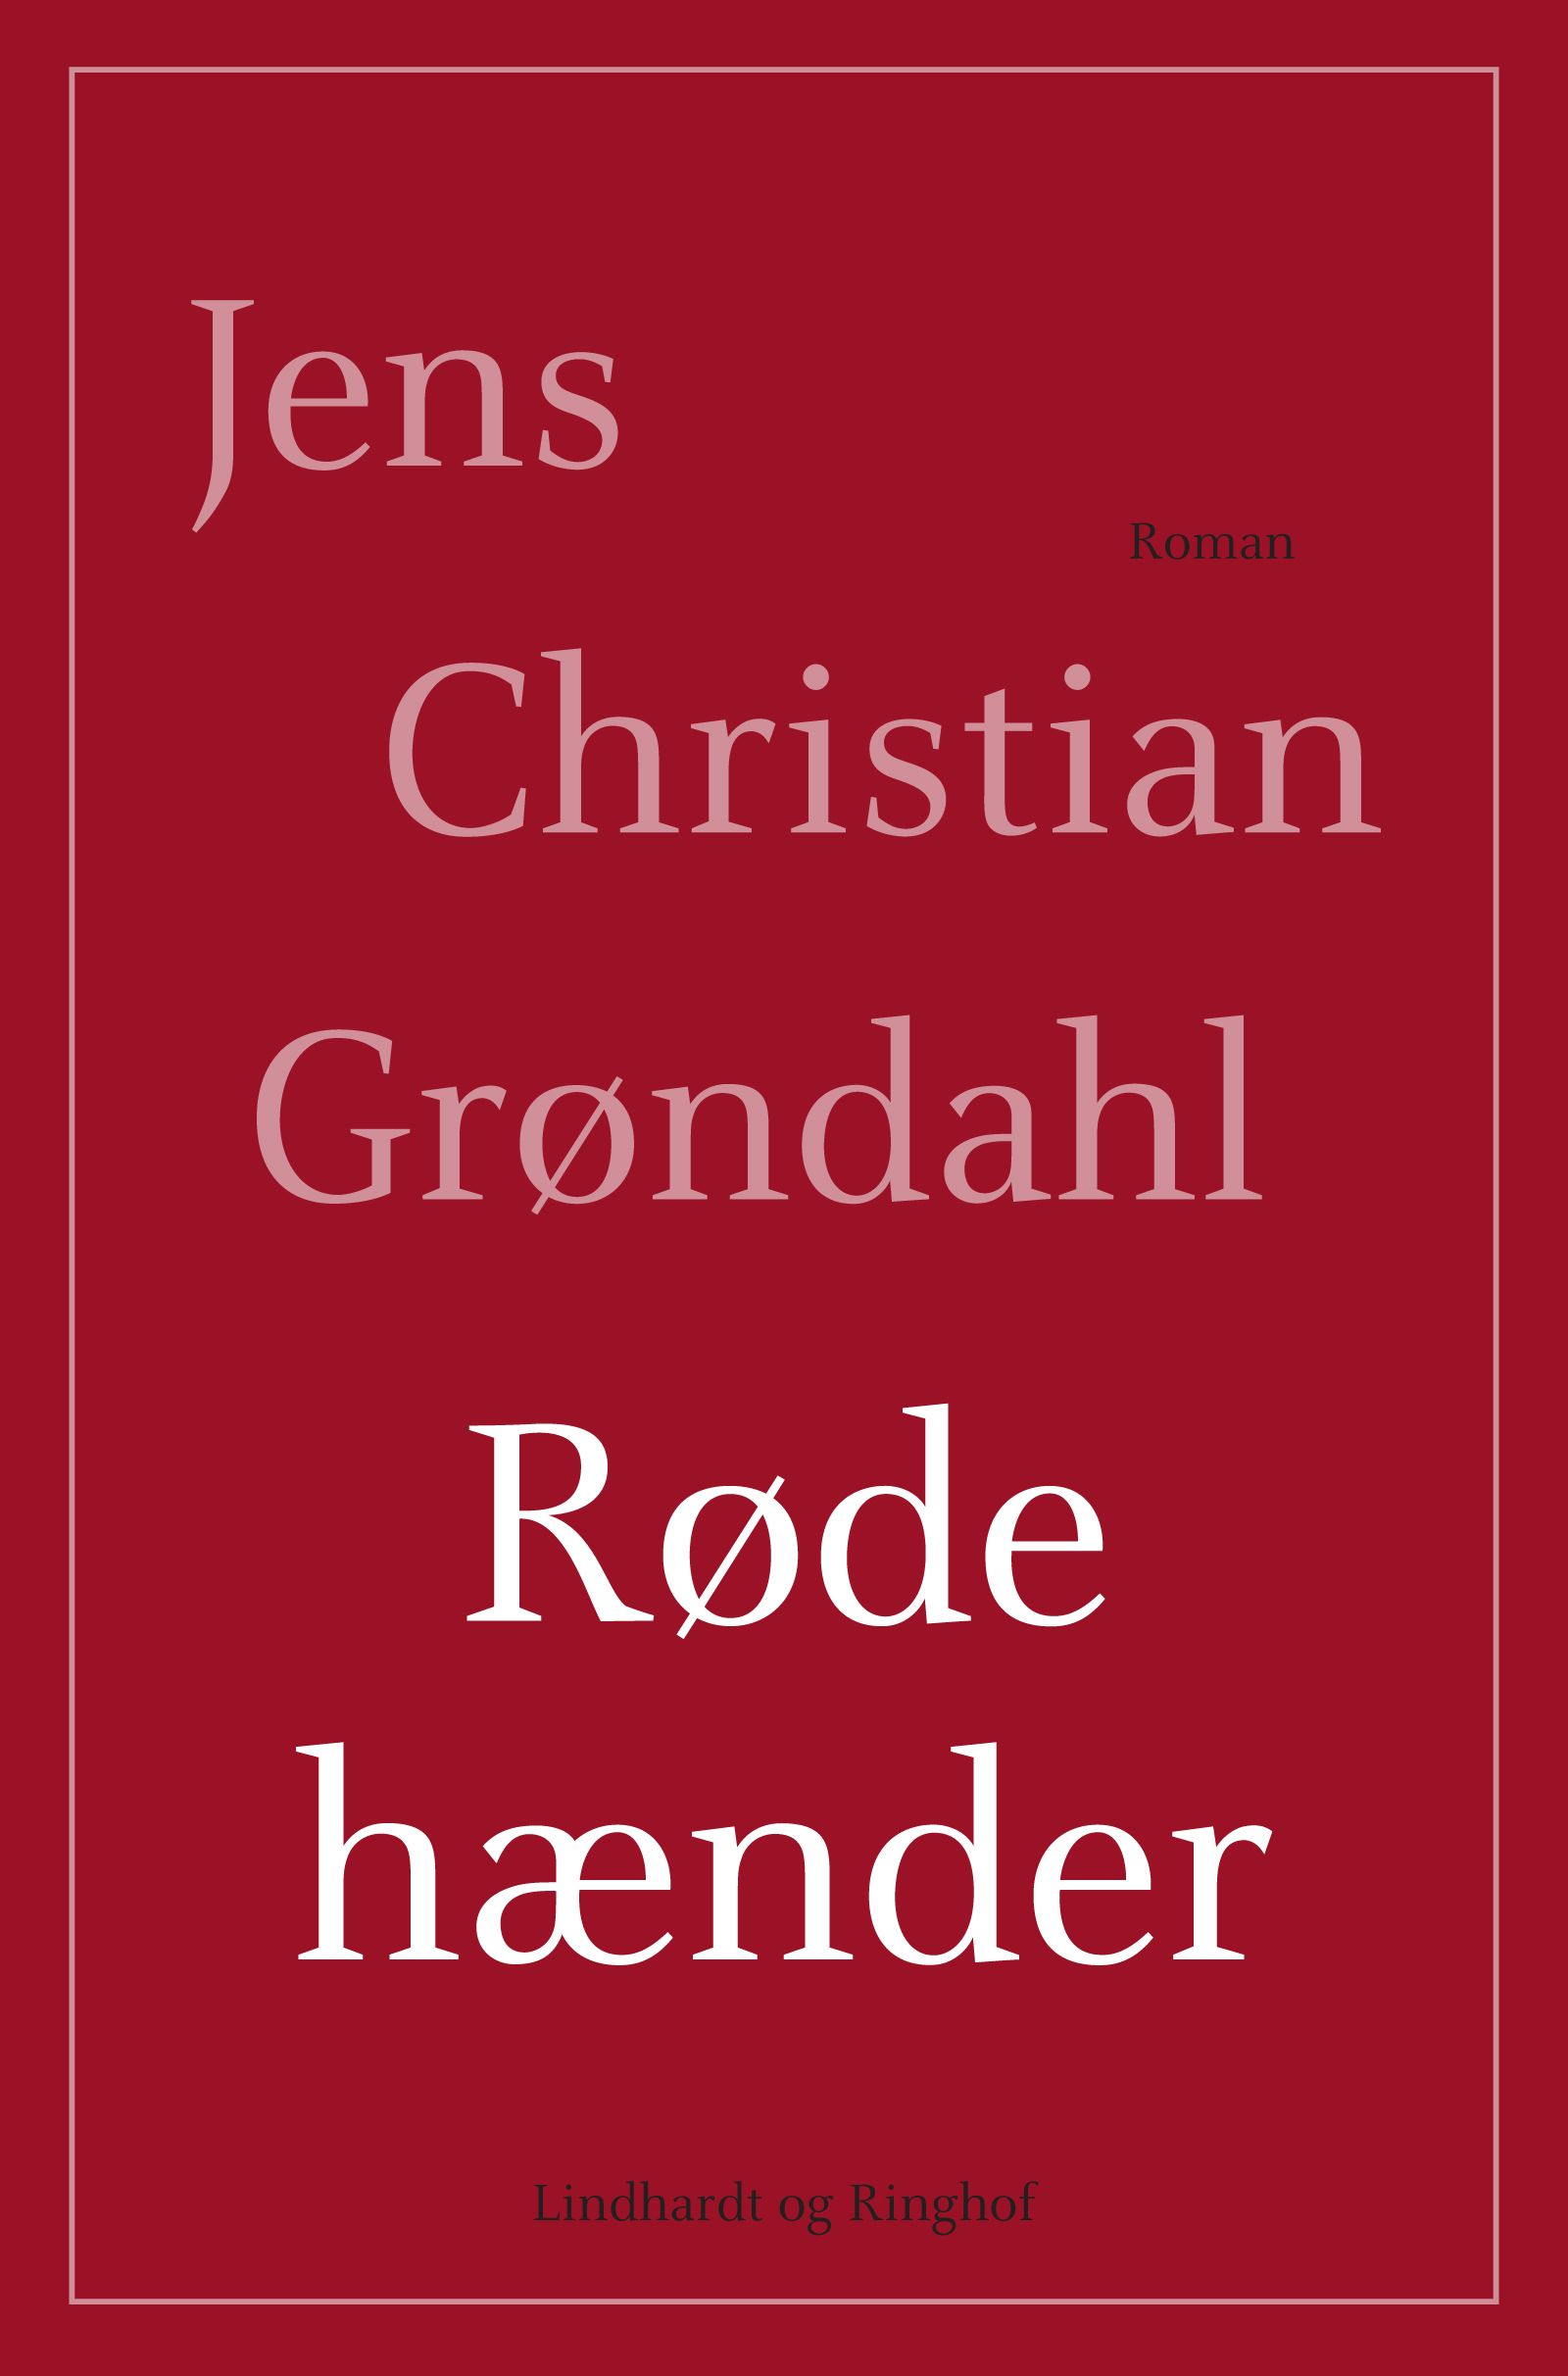 Røde hænder, eBook by Jens Christian Grøndahl